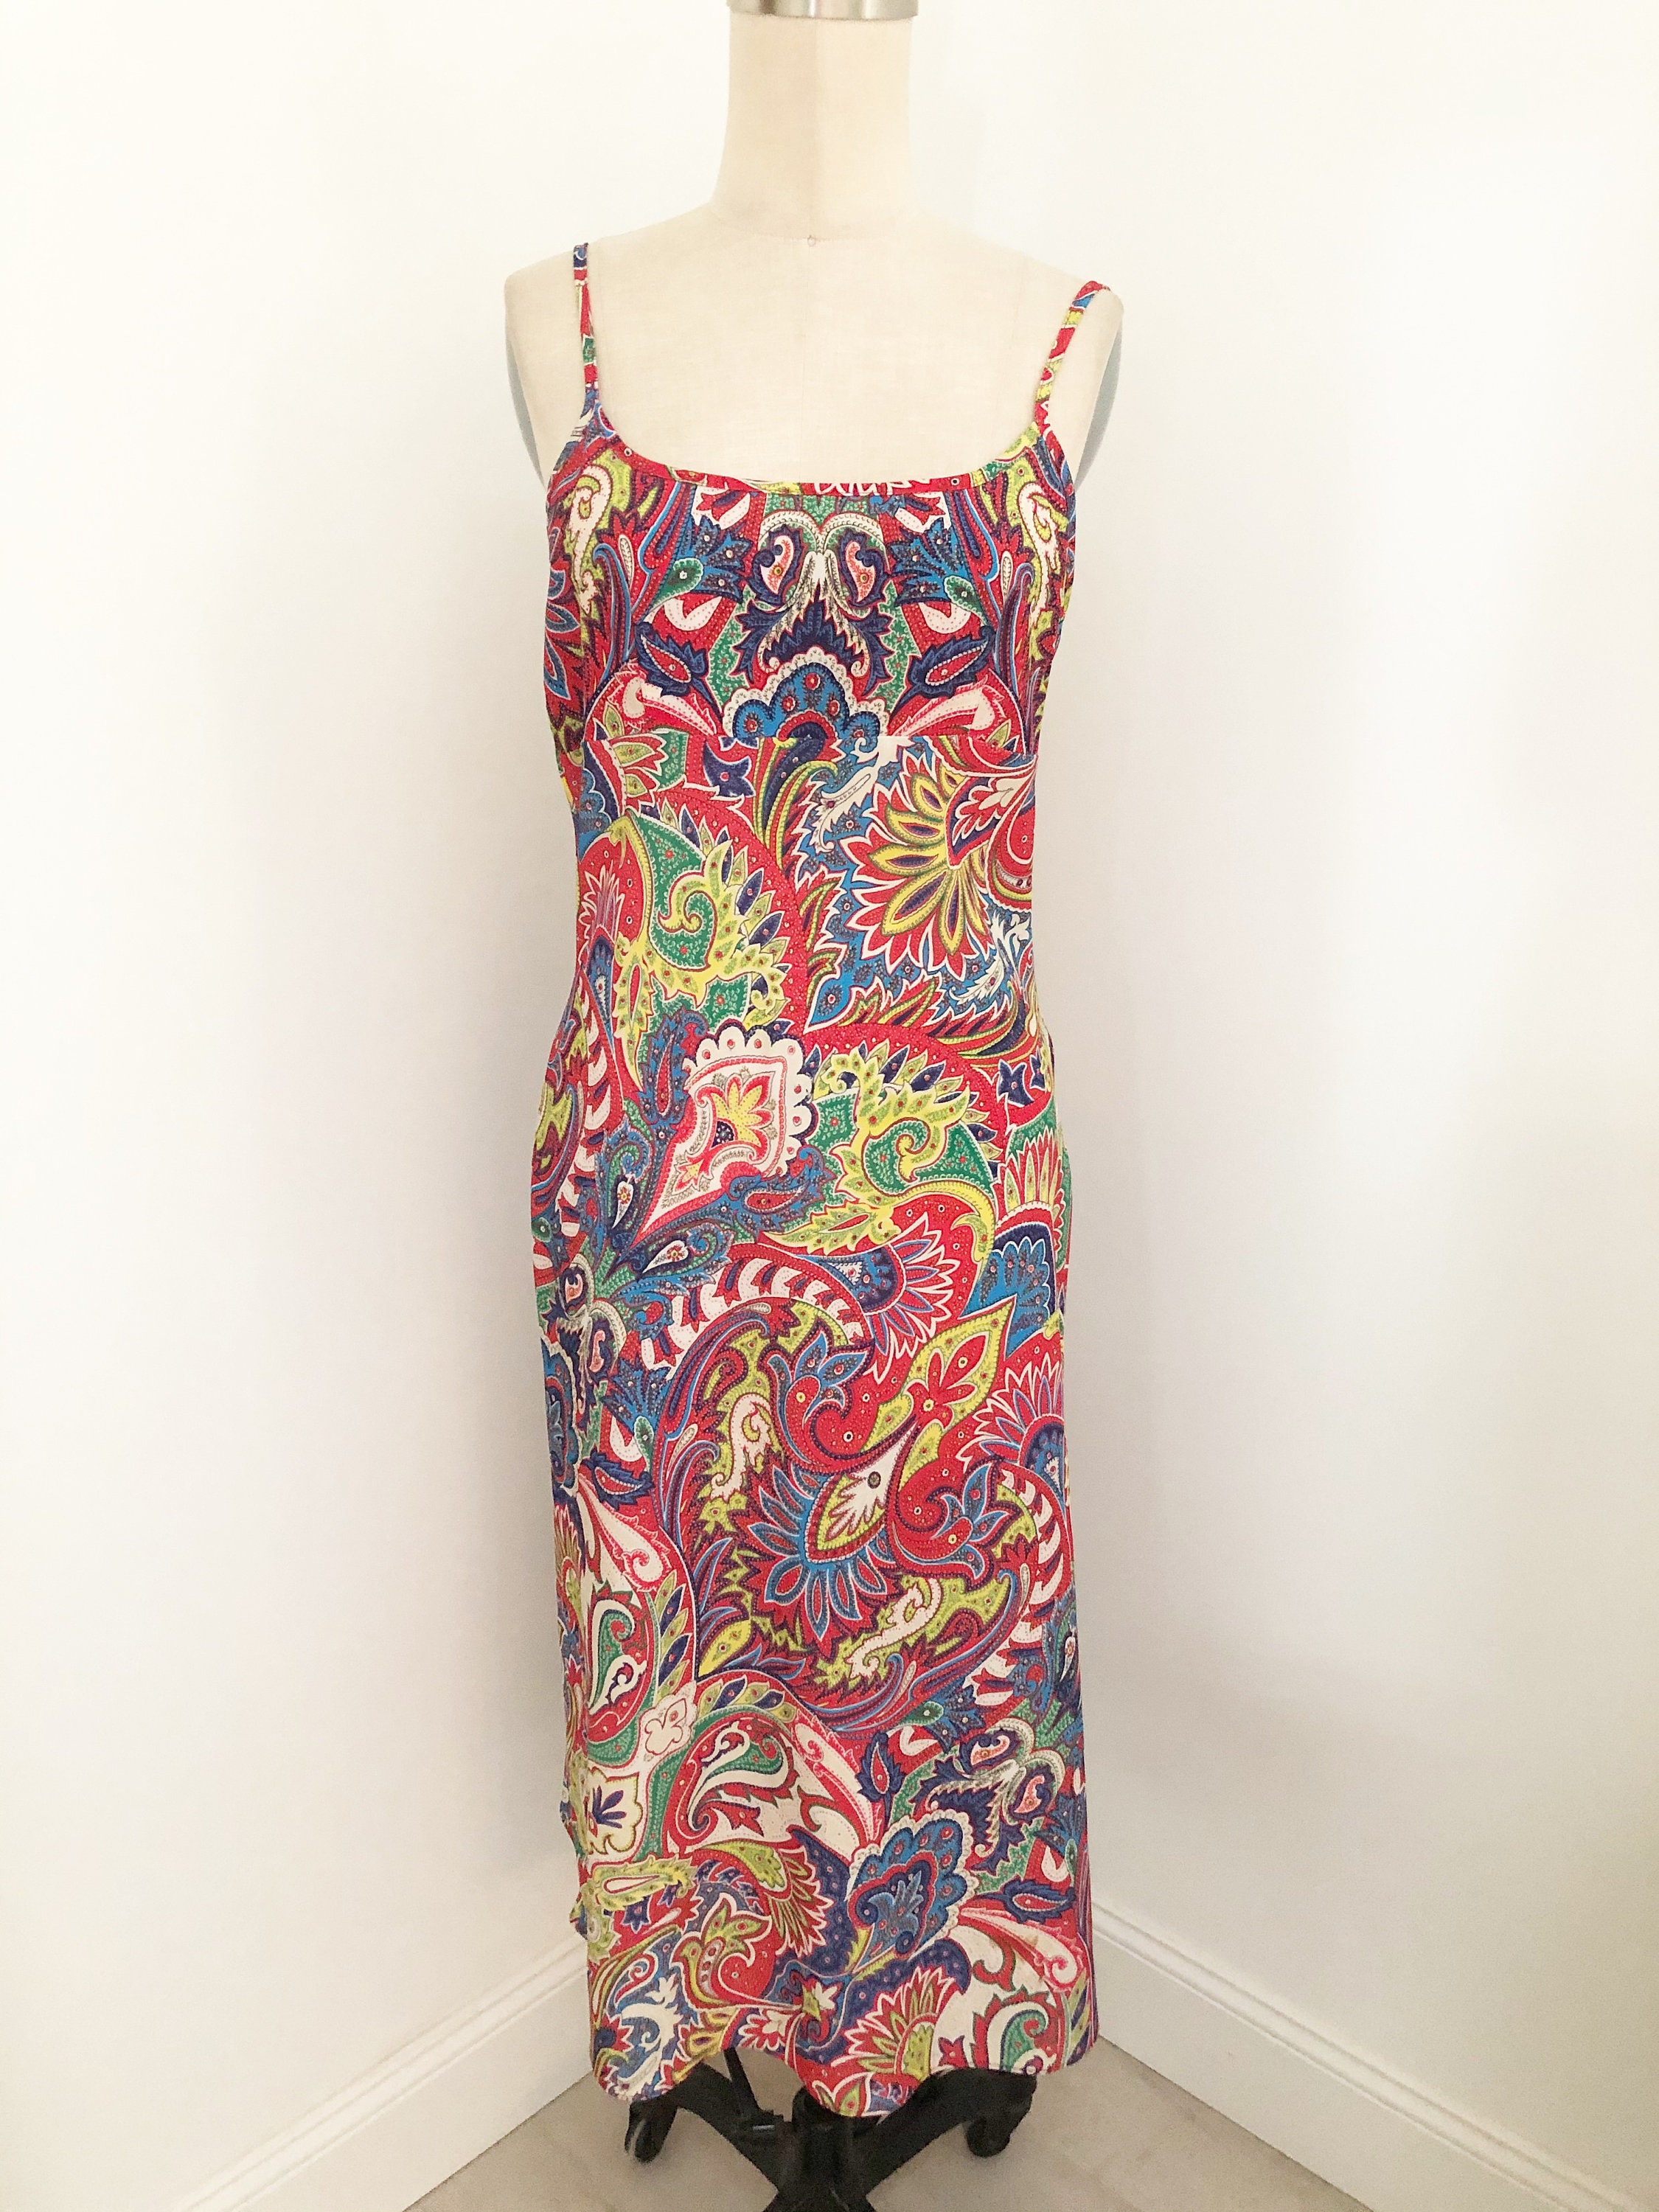 Vintage Slip Dress Eye Candy Spaghetti Strap Dress Bright - Etsy